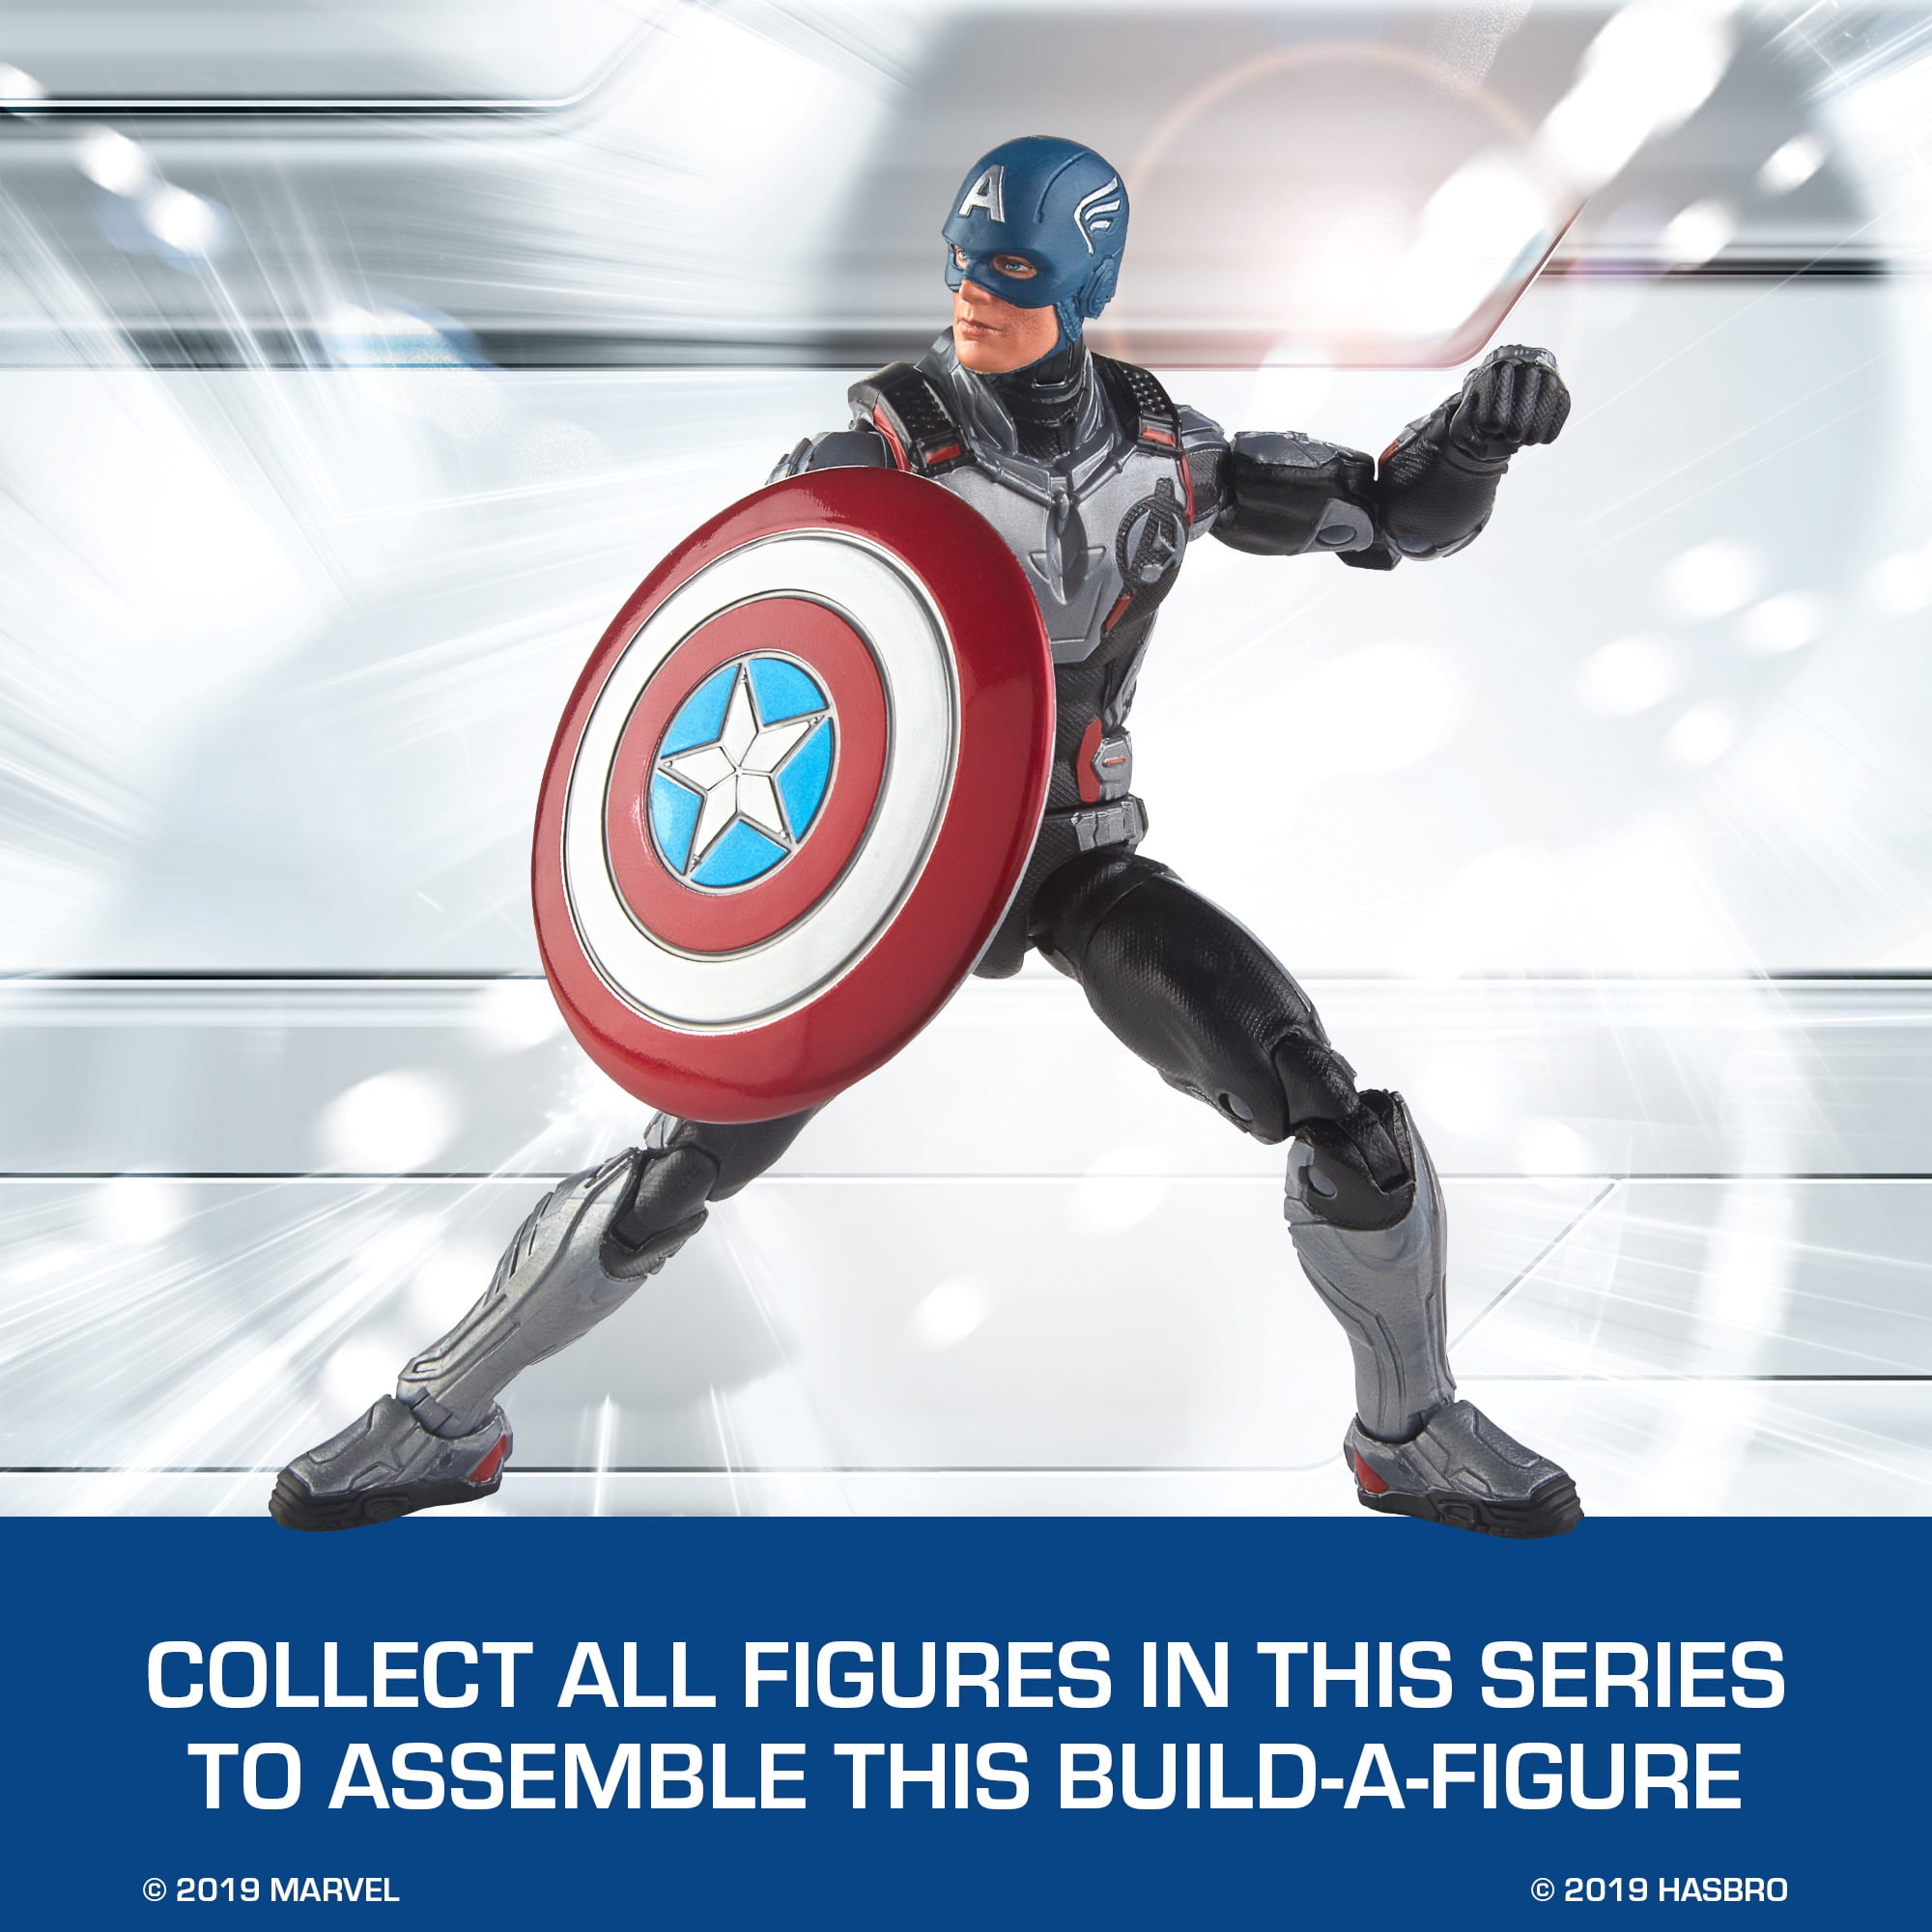 Marvel Avengers 4 Captain America Endgame Hasbro 6 Inch Figure 2019 for sale online 